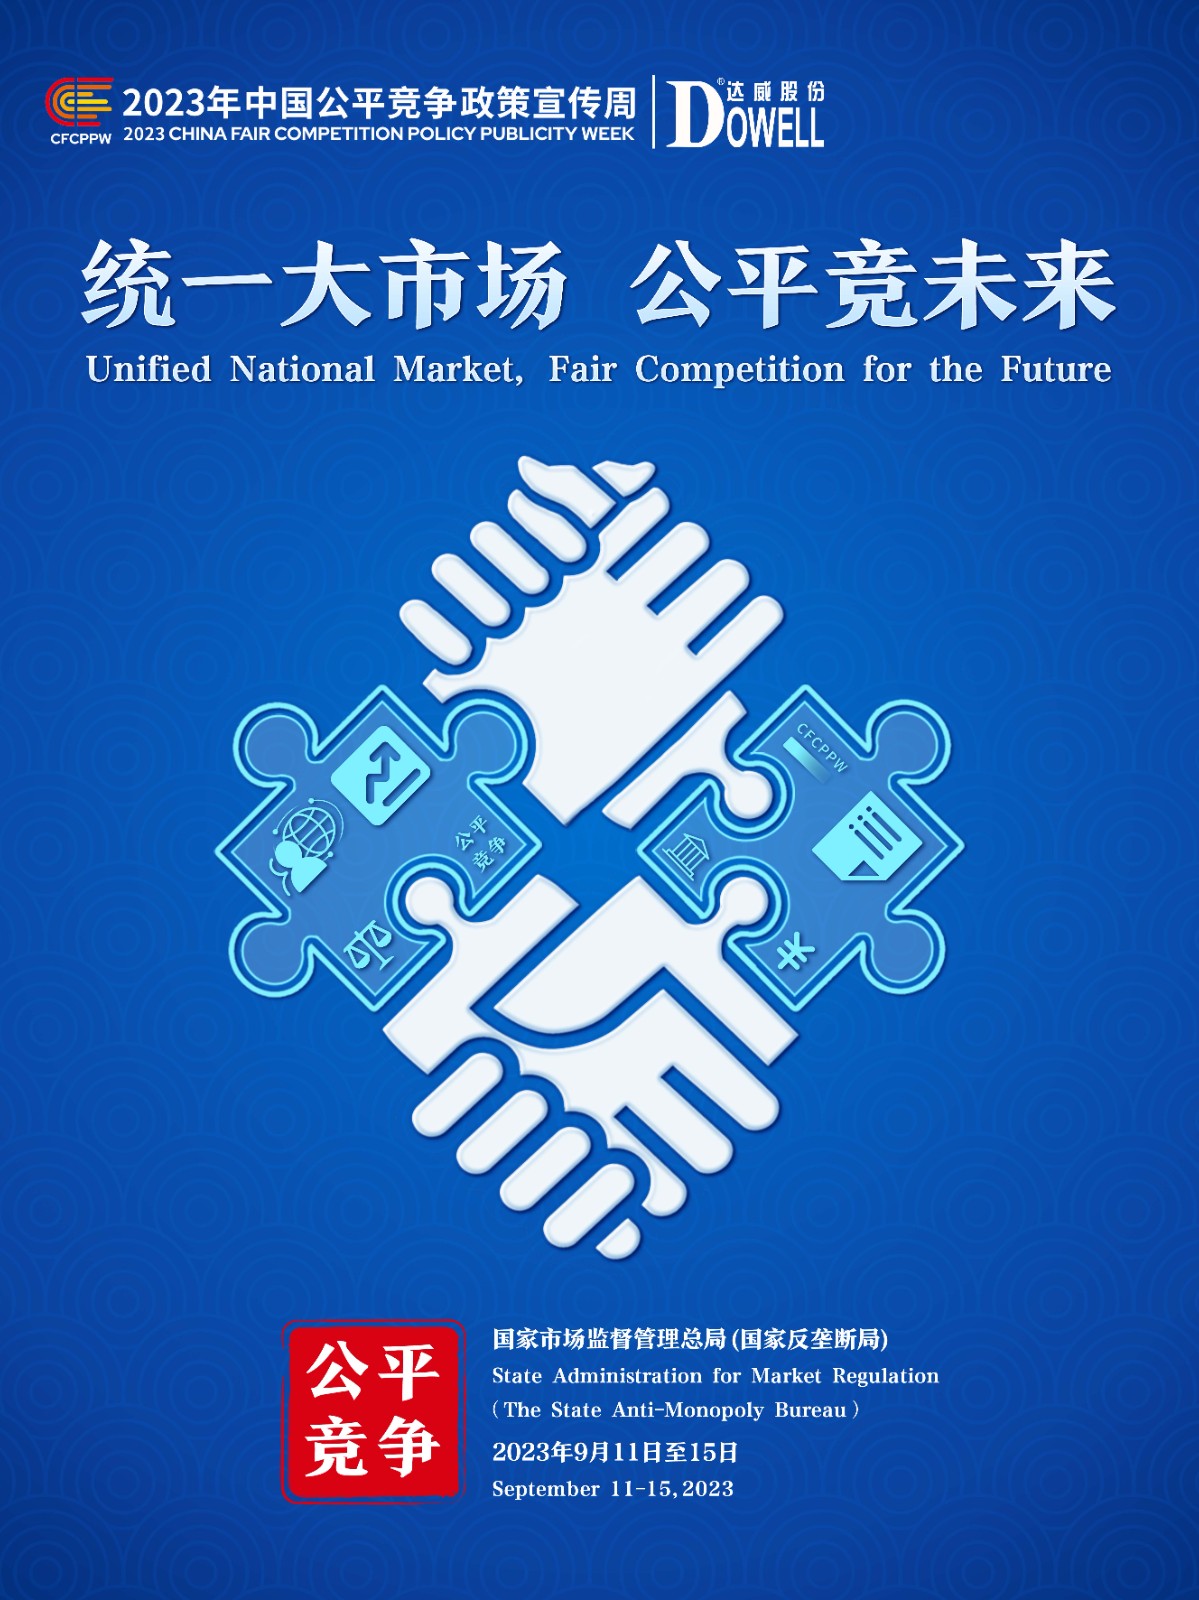 2023年中国公平竞争政策宣传周主题海报-加达威logo.jpg